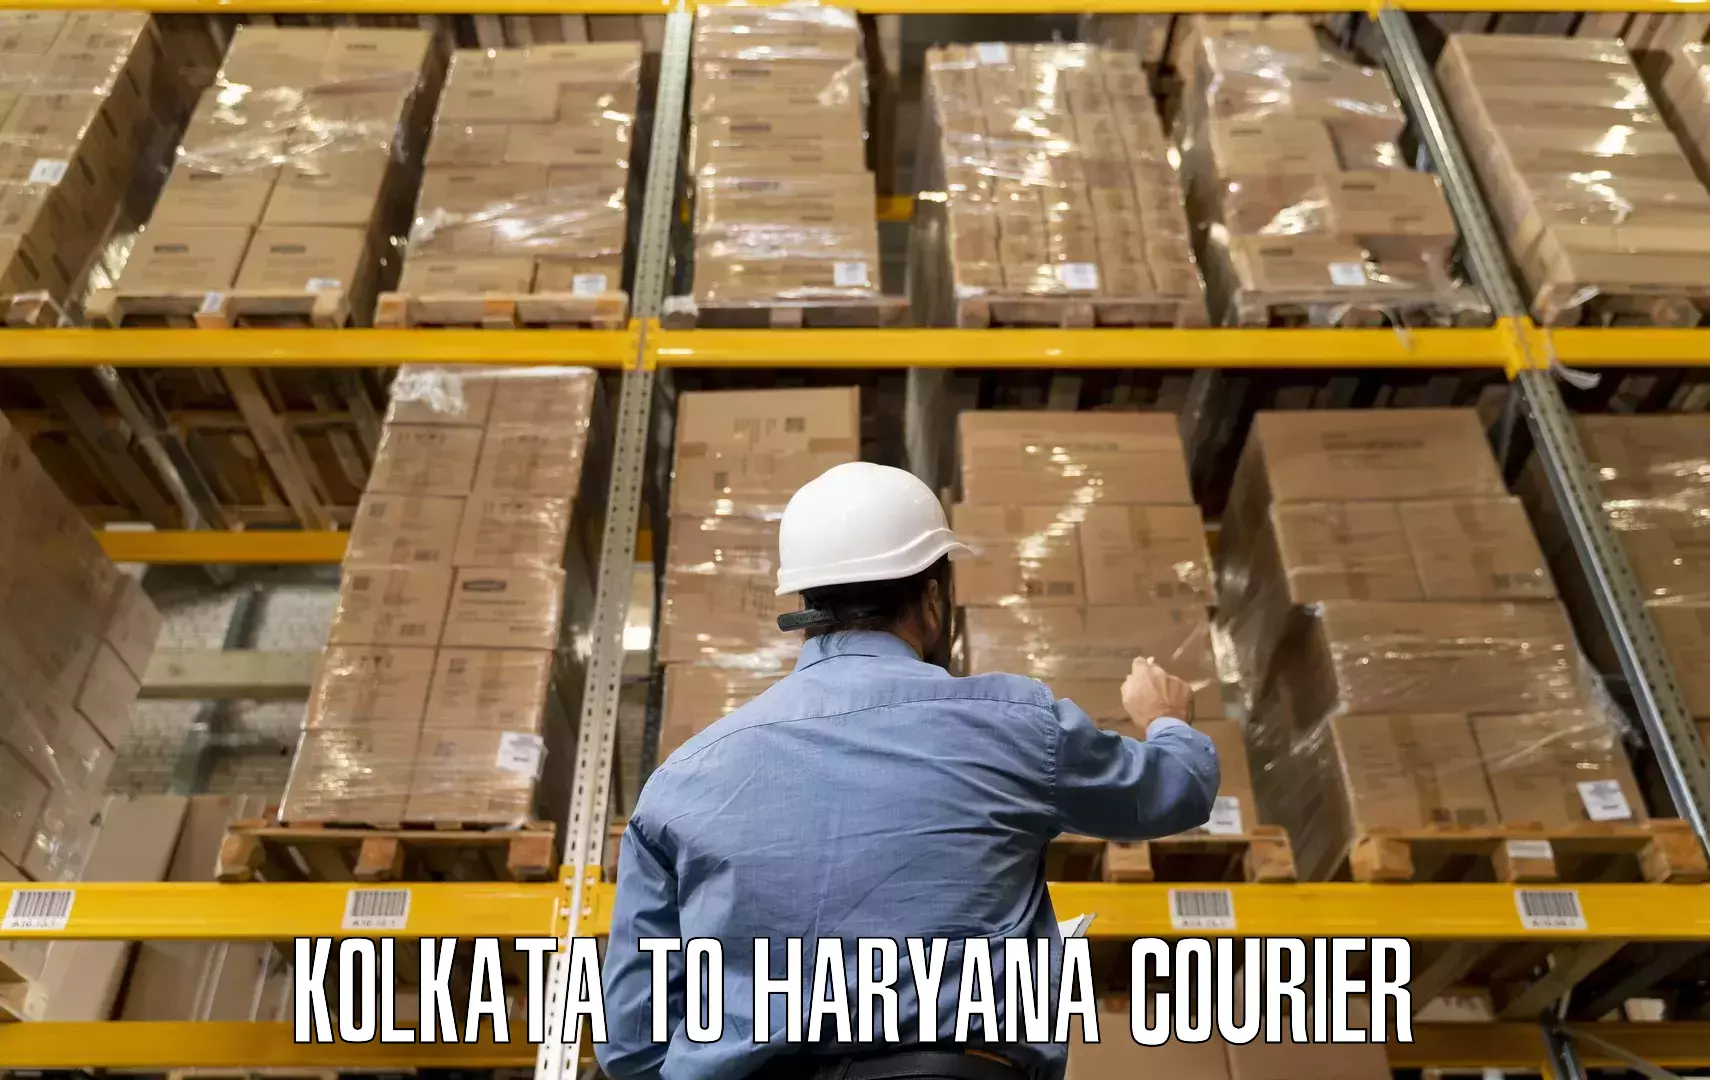 Furniture transport specialists Kolkata to Jhajjar